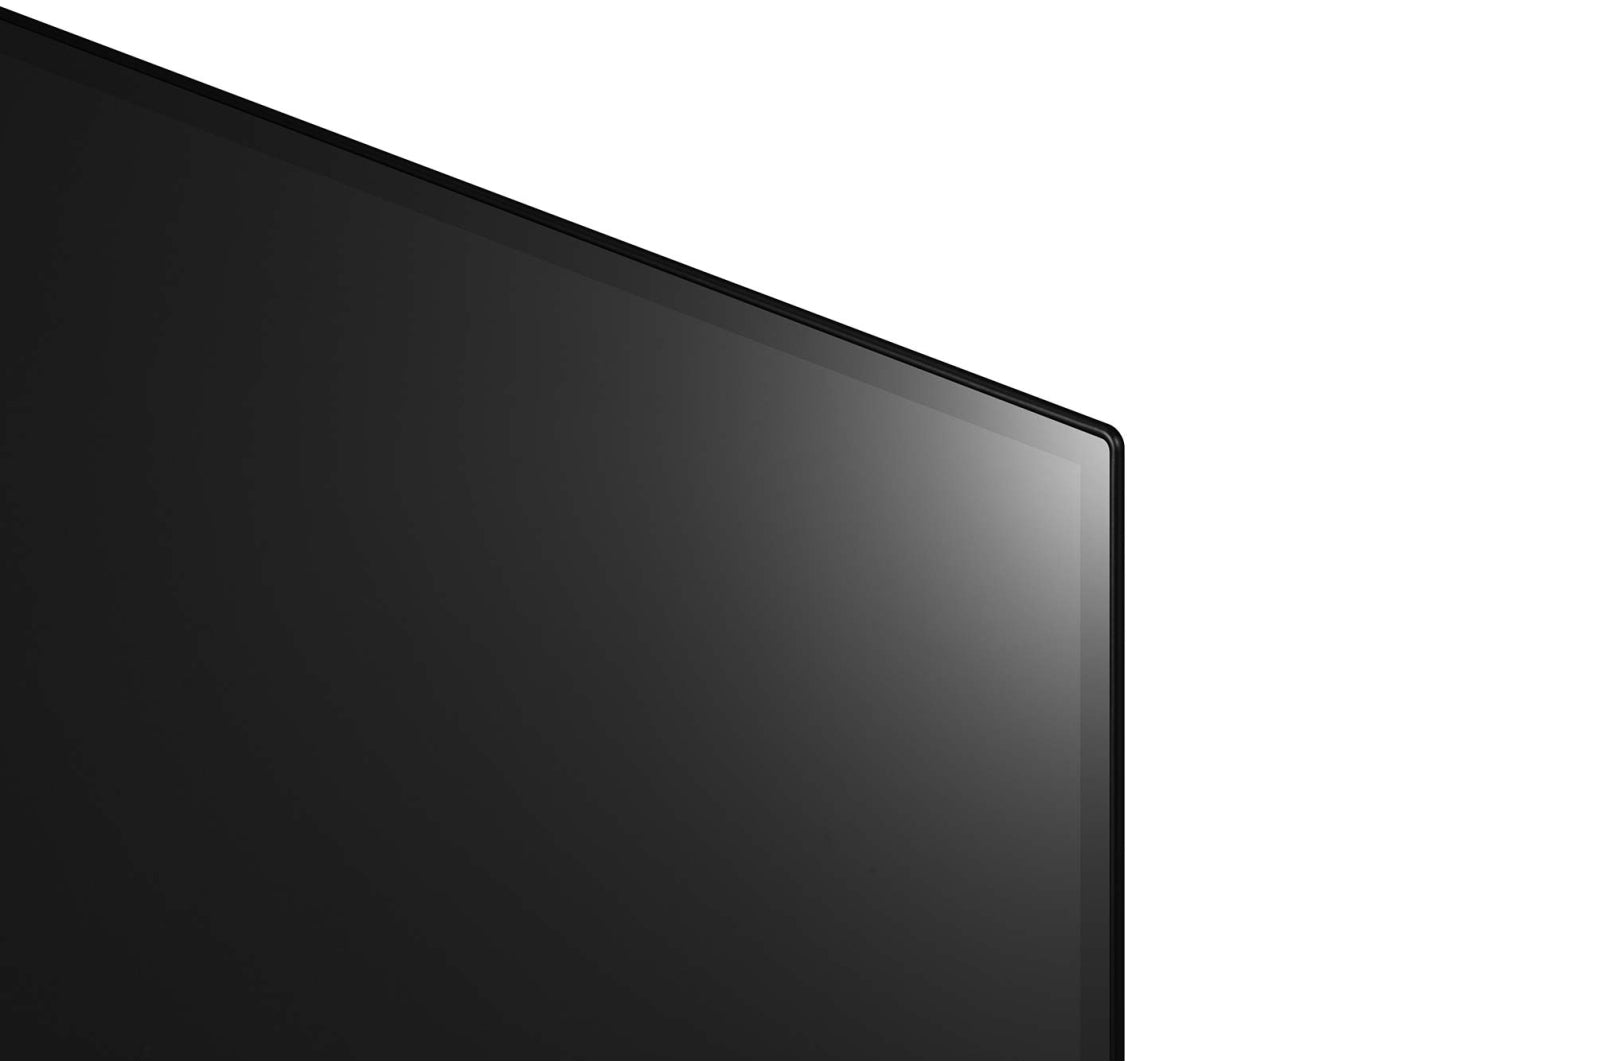 LG 55 OLED ThinQ SMART TV